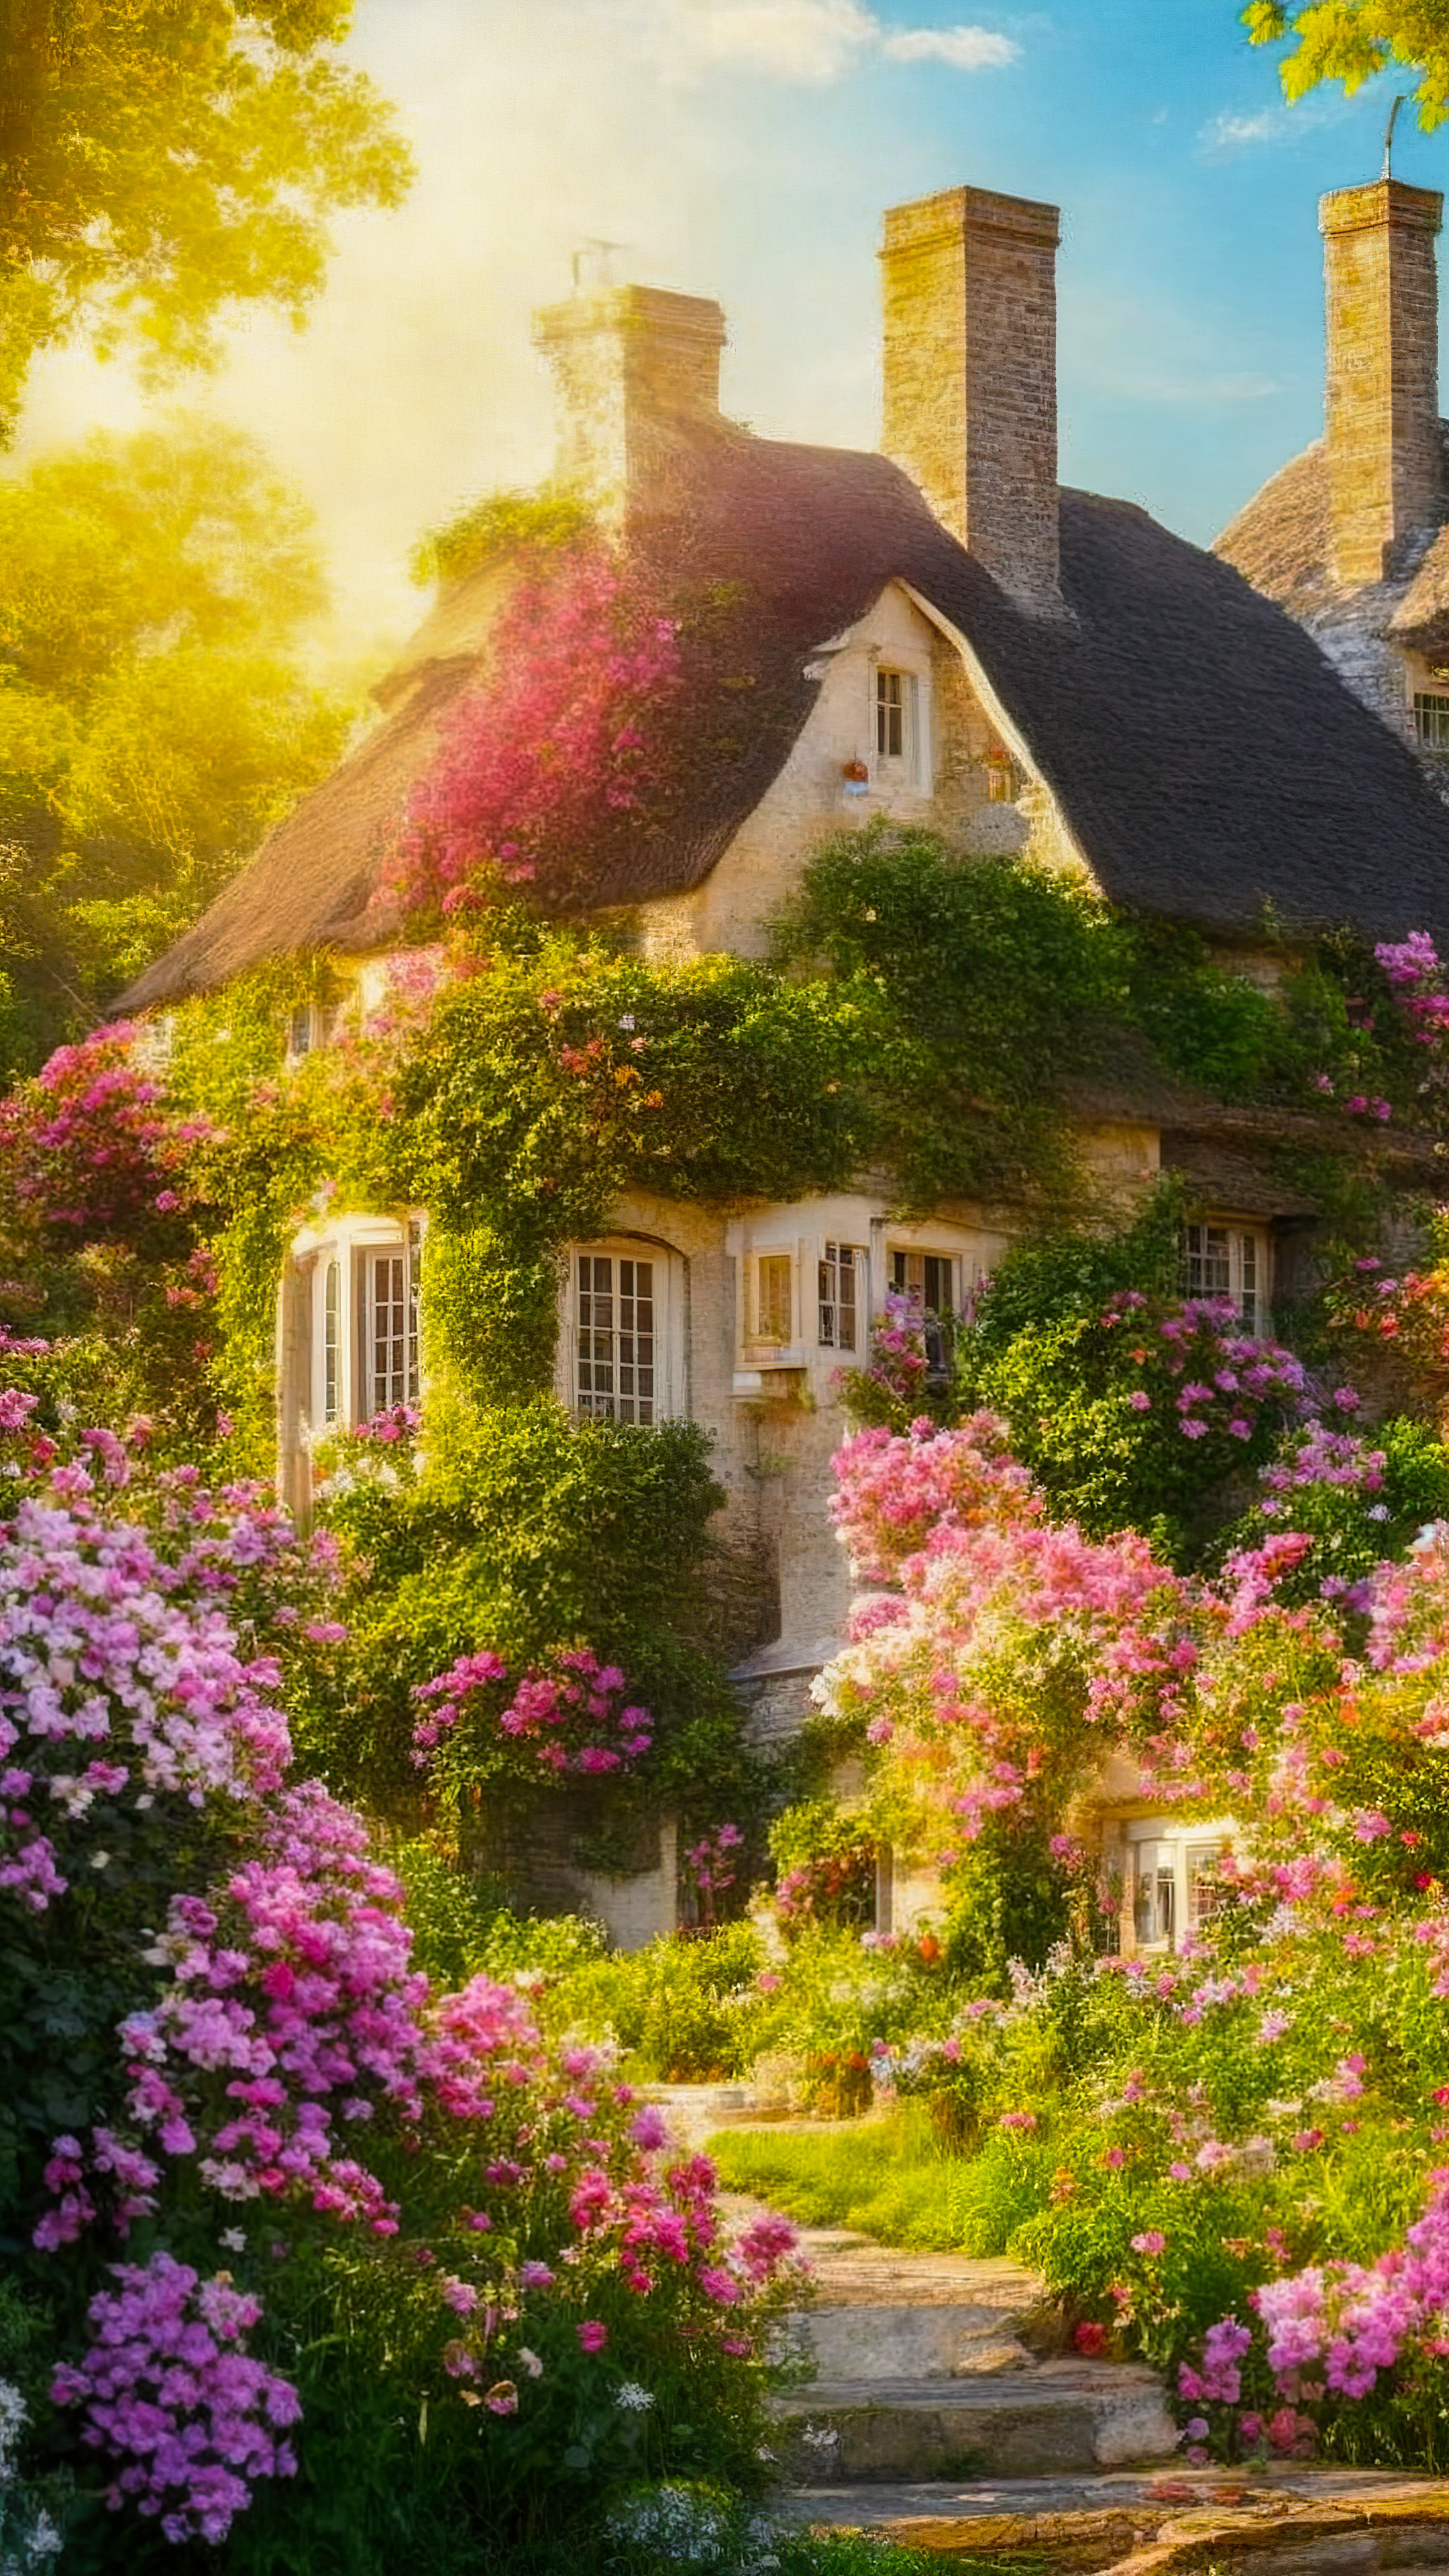 Découvrez le charme d’un fond d’écran de paysage en 4K pour votre iPhone, présentant un charmant cottage niché dans un jardin rempli de fleurs, baigné par la chaleur d’une journée ensoleillée.